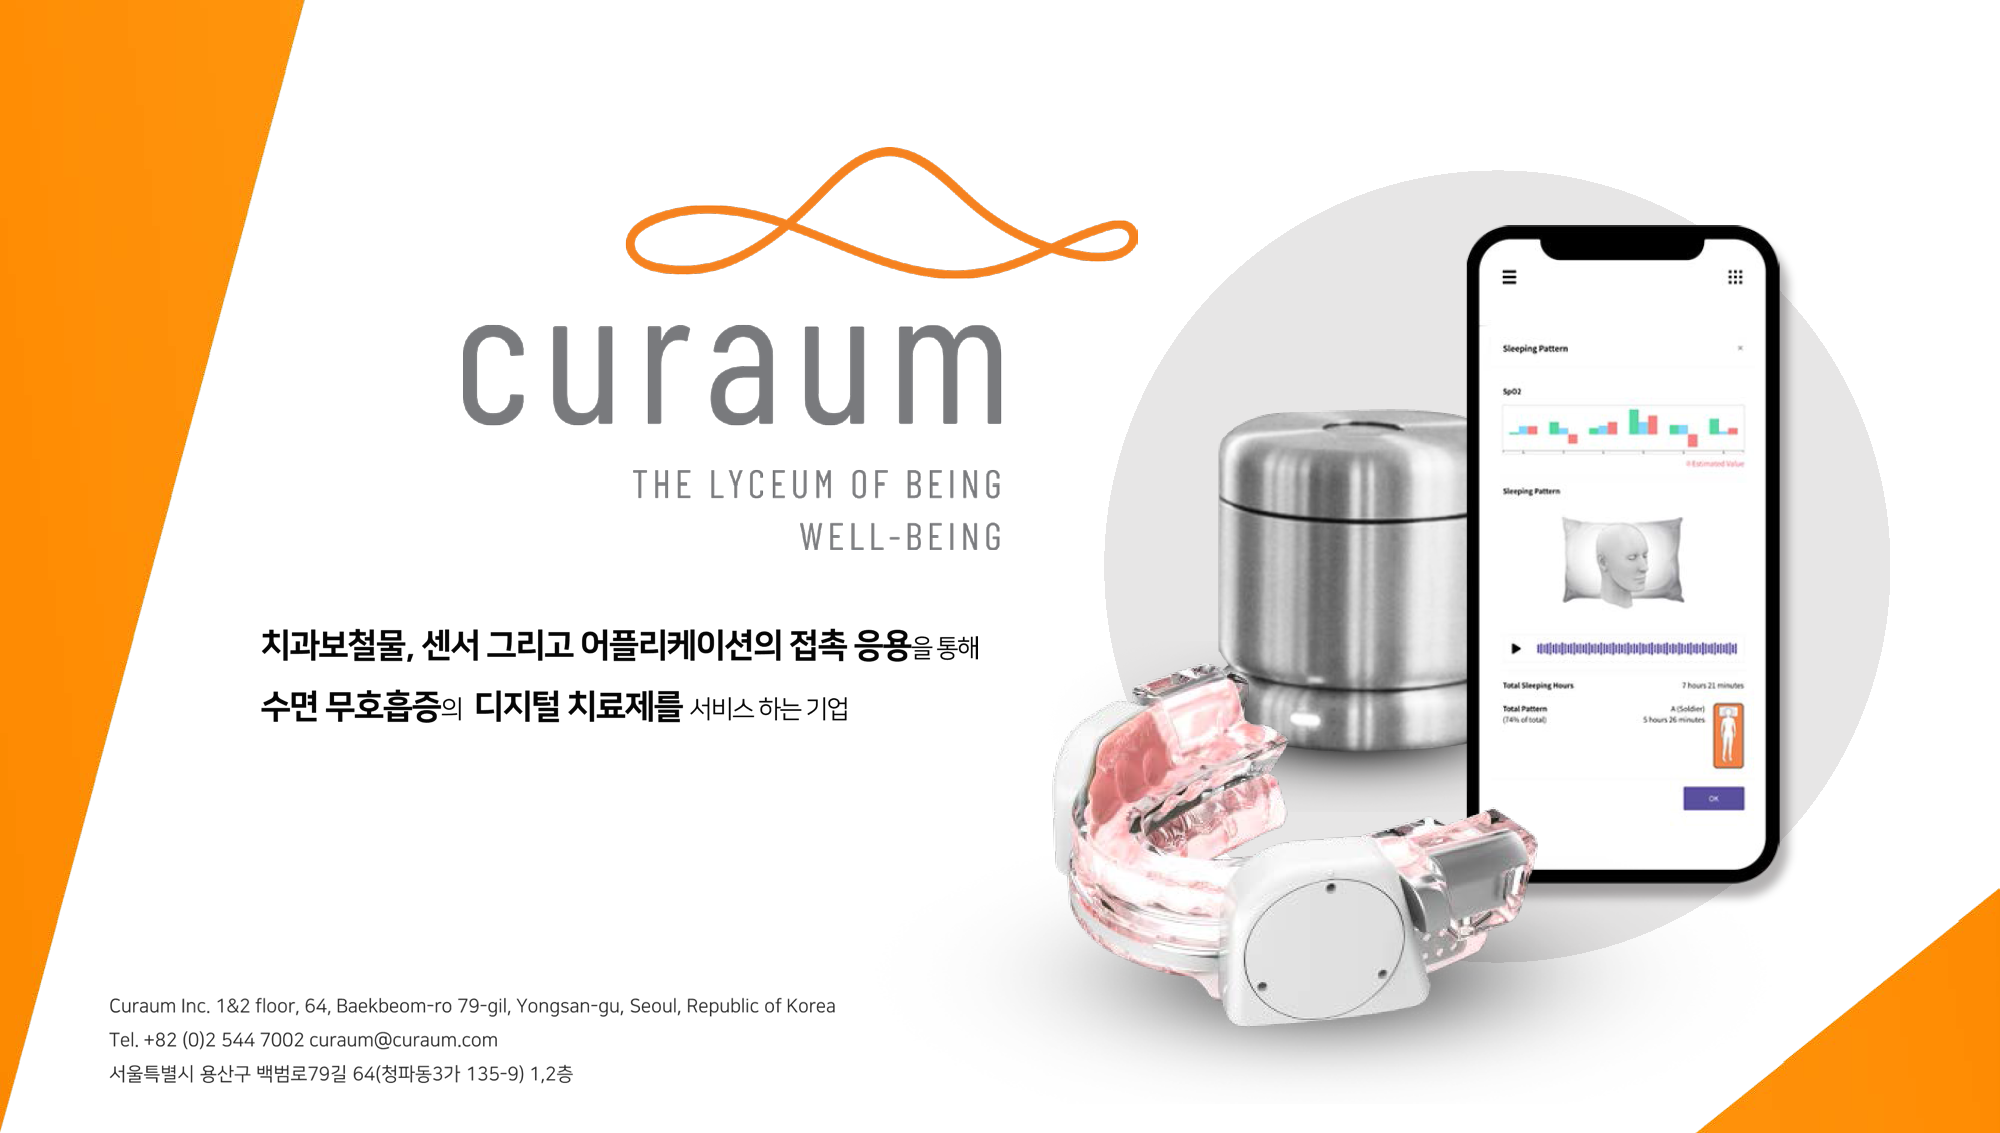 curaum 
THE LYCEUM OF BEING WELL-BEING
치과보철물, 센서 그리고 어플리케이션의 접촉 응용을 통해 수면 무호흡증의 디지털 치료제를 서비스하는 기업